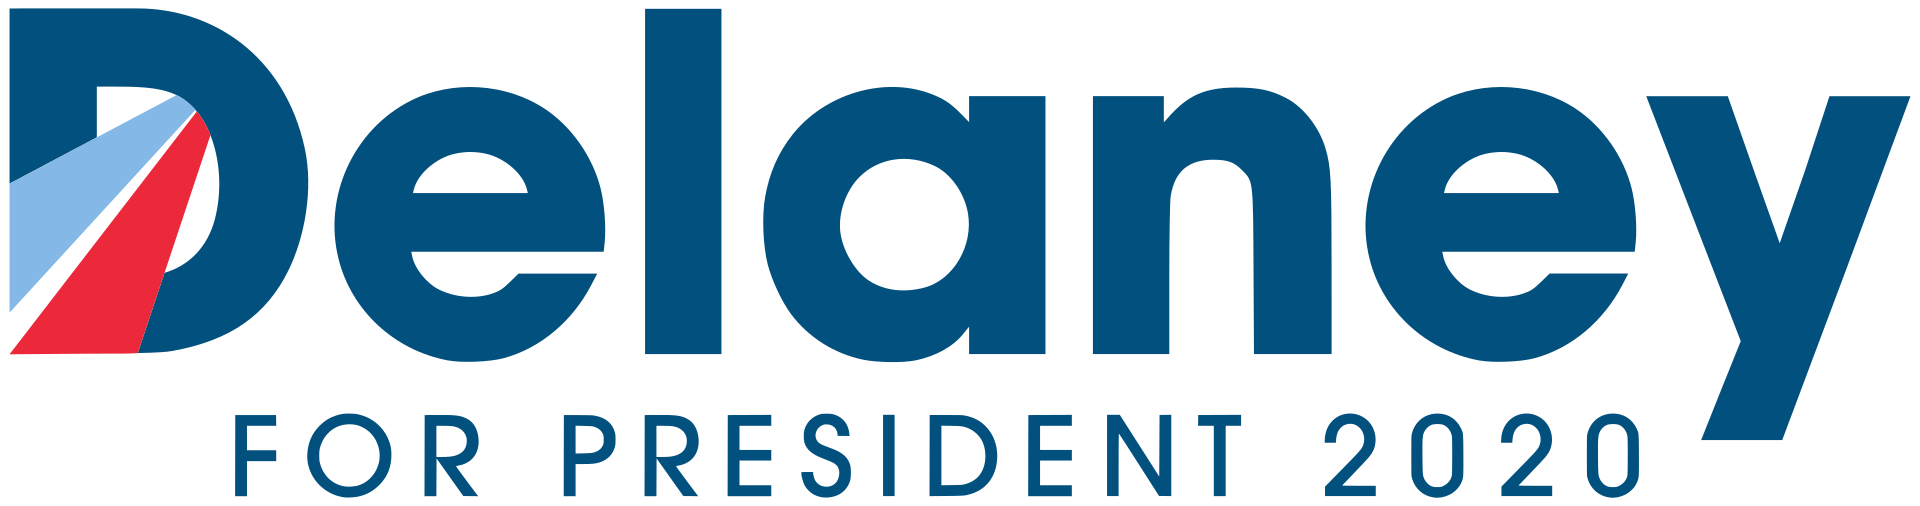 Delaney campaign logo